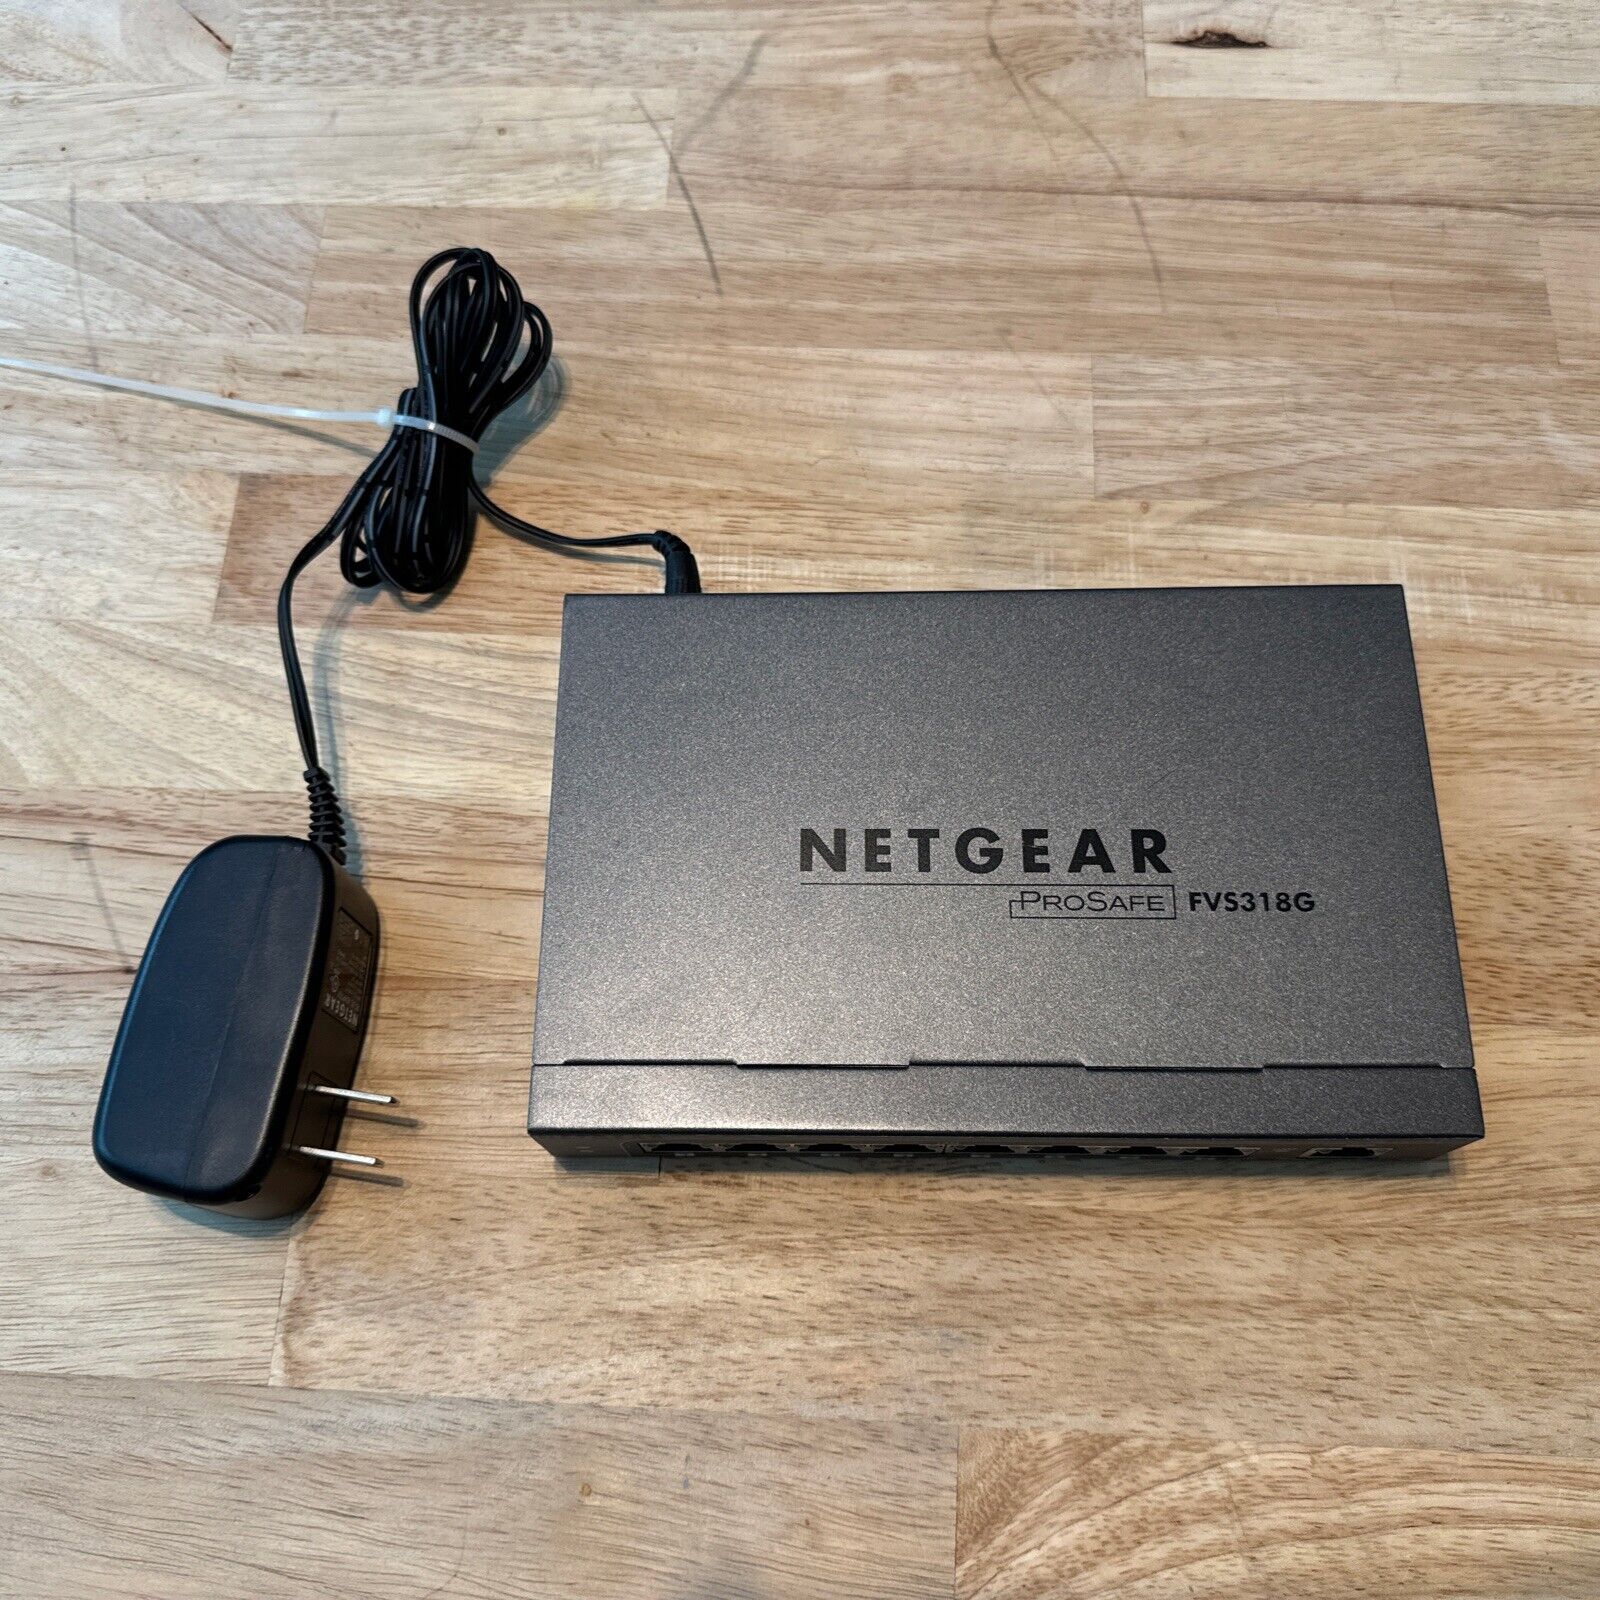 NETGEAR ProSafe FVS318G 8-Port VPN FIREWALL ROUTER w/ AC Adapter